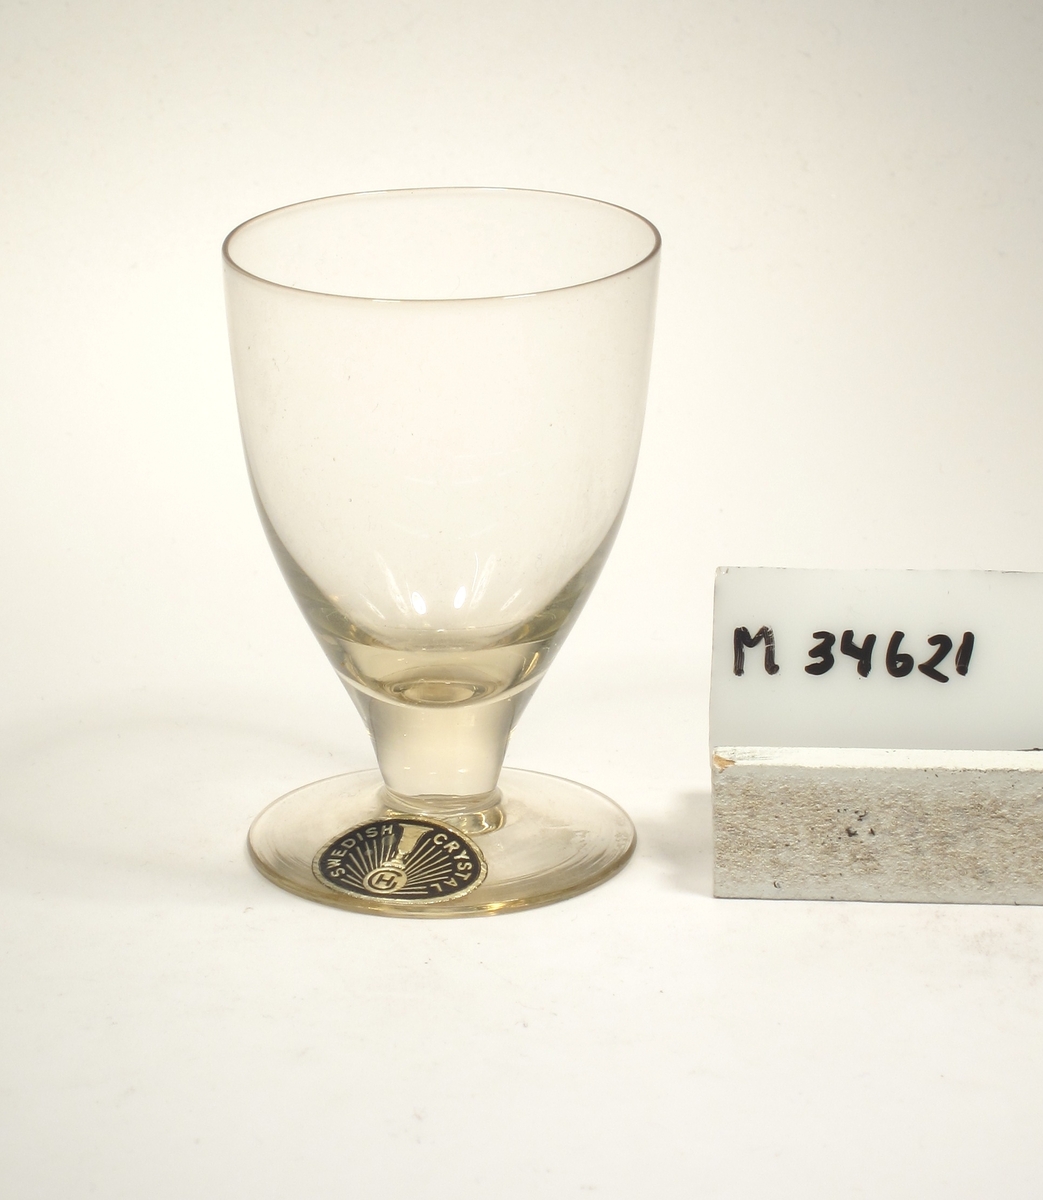 Gultonat. Ovoid kupa med draget tjockt konande ben.
Etikett: Oval, svart botten med guldtext: SWEDISH CRYSTAL, GH Strålar och ett glas.